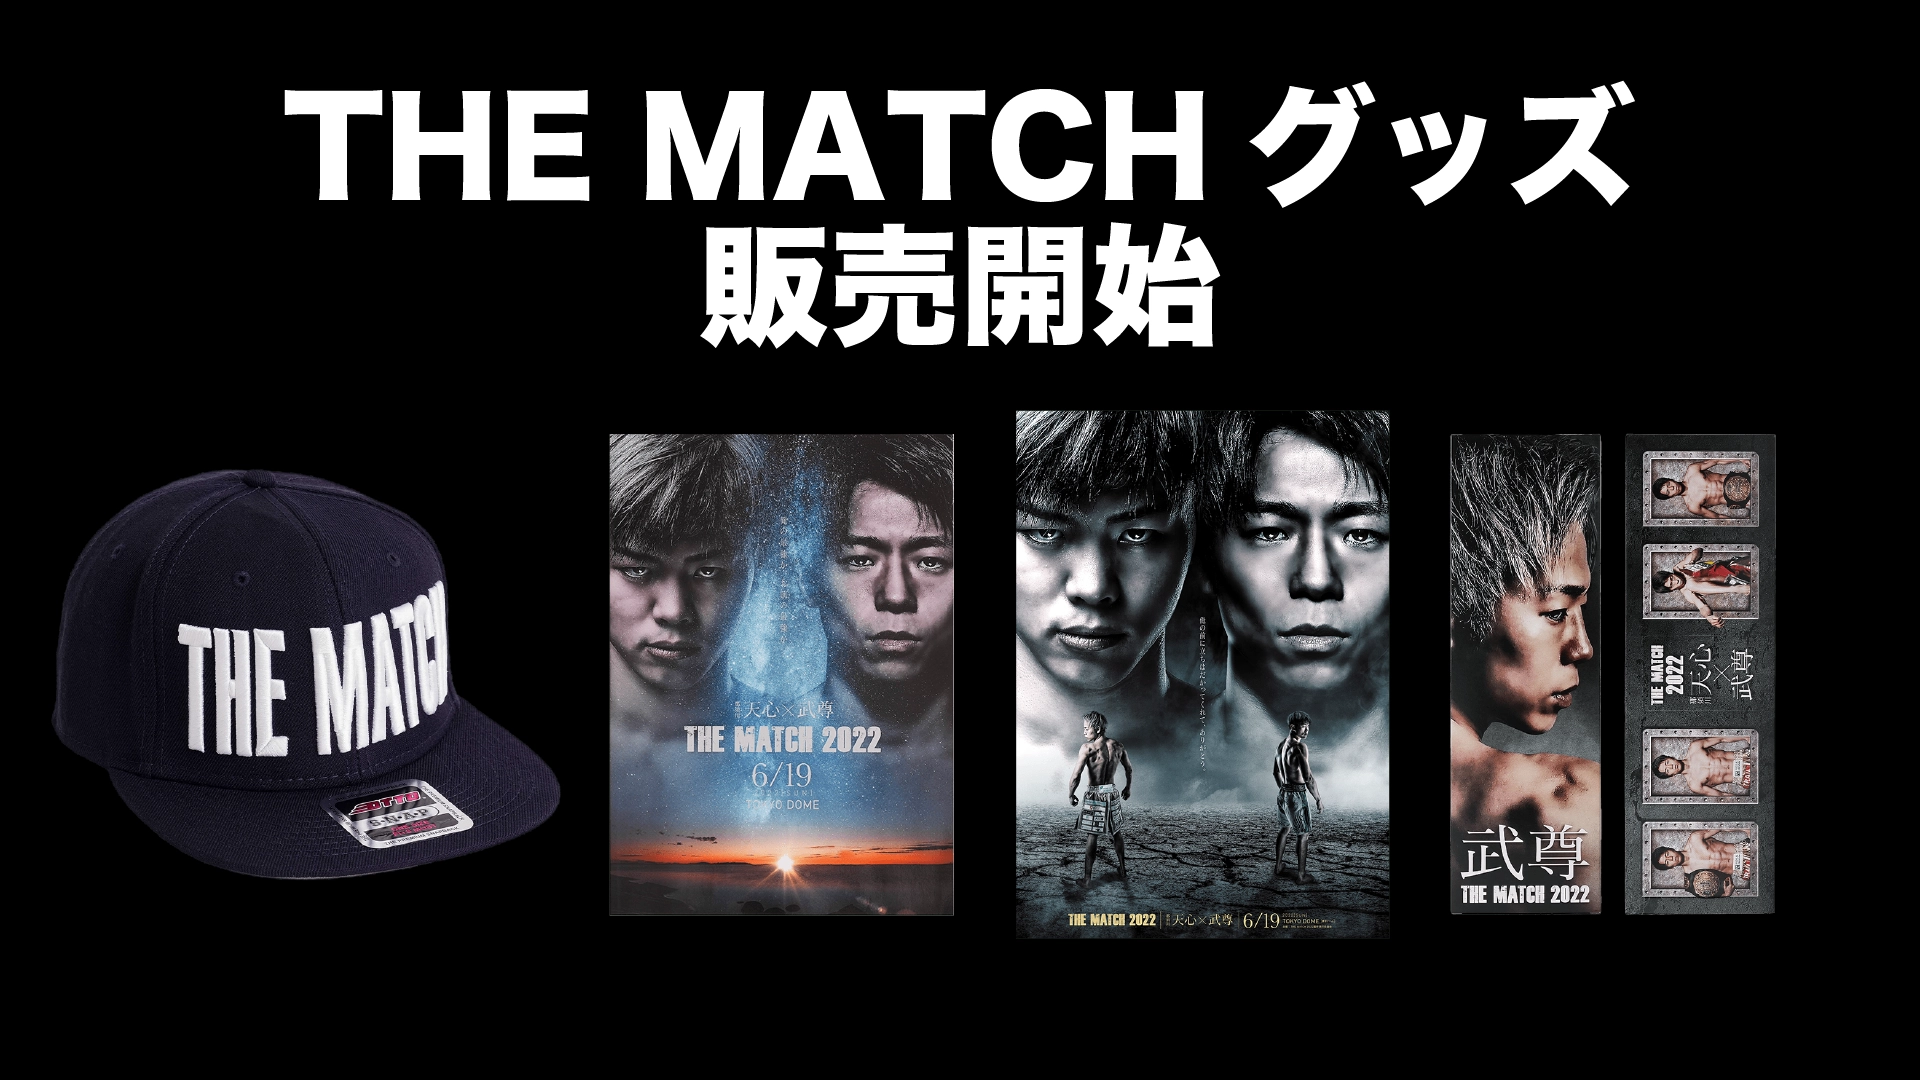 THE MATCH 6.東京ドーム大会 オフィシャルグッズがK福岡大会